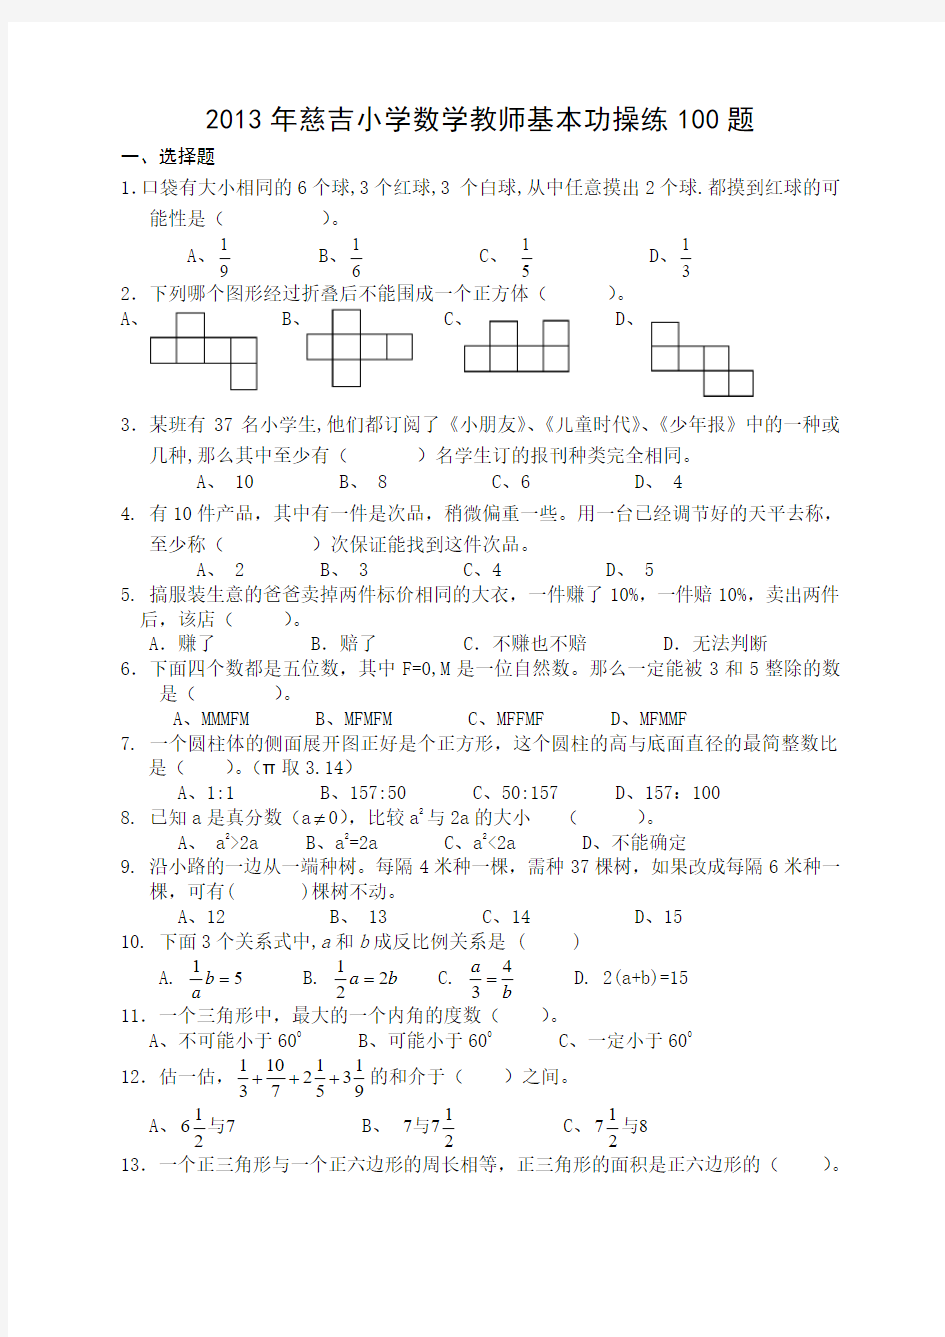 2013年慈吉小学数学教师基本功操练100题